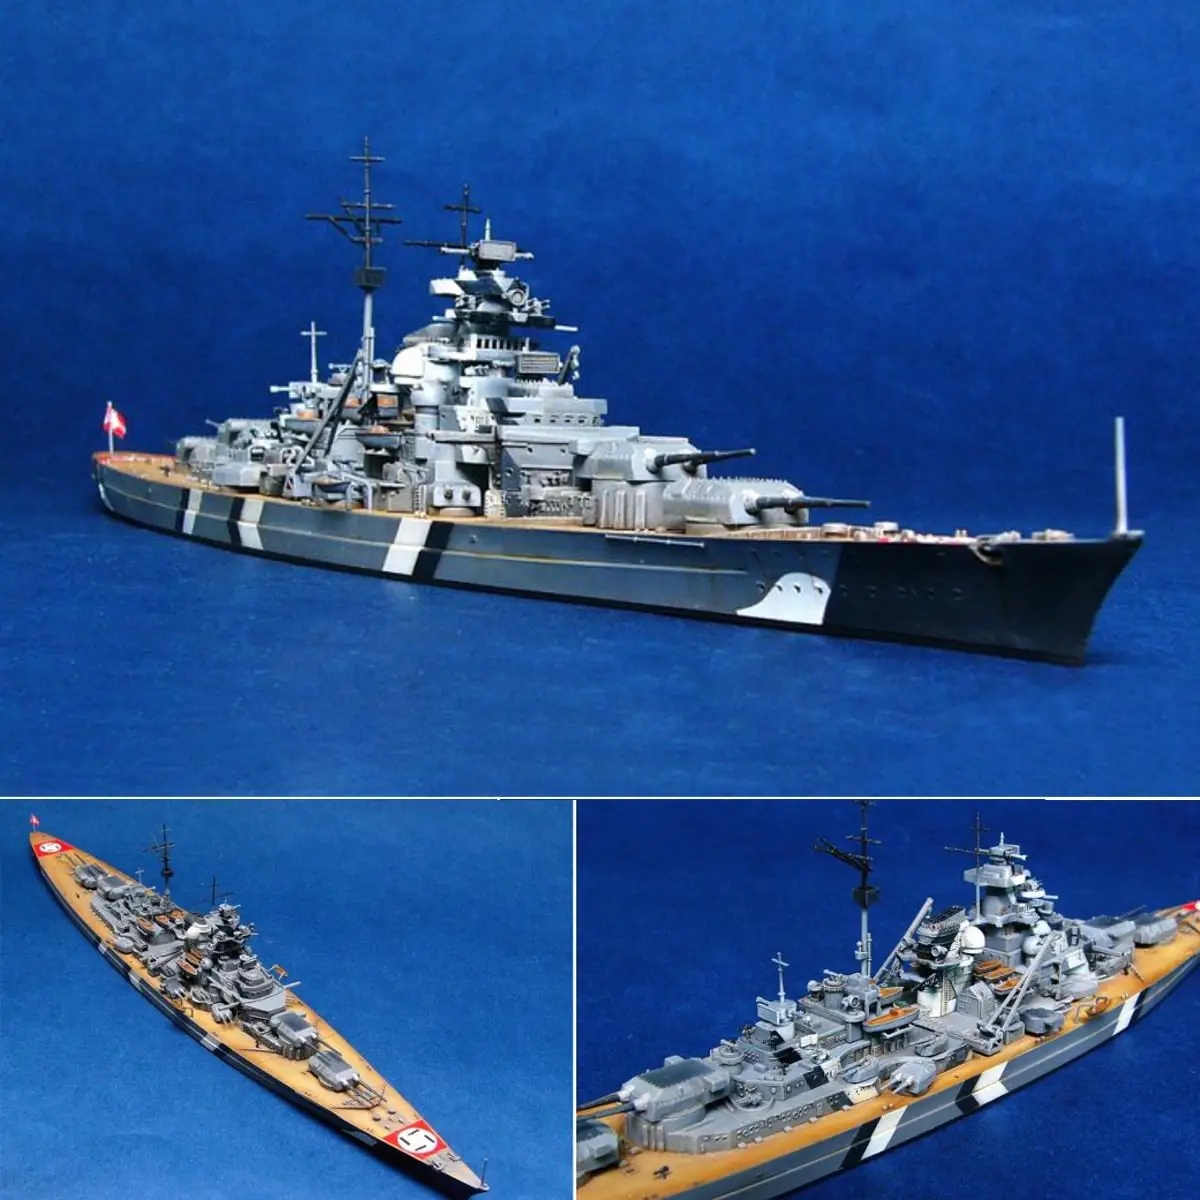 1/700 масштаб Второй мировой войны немецкий морской корабль KMS Bismarck линкор комплект модели корабля игрушка пластиковая модель сборная игрушка